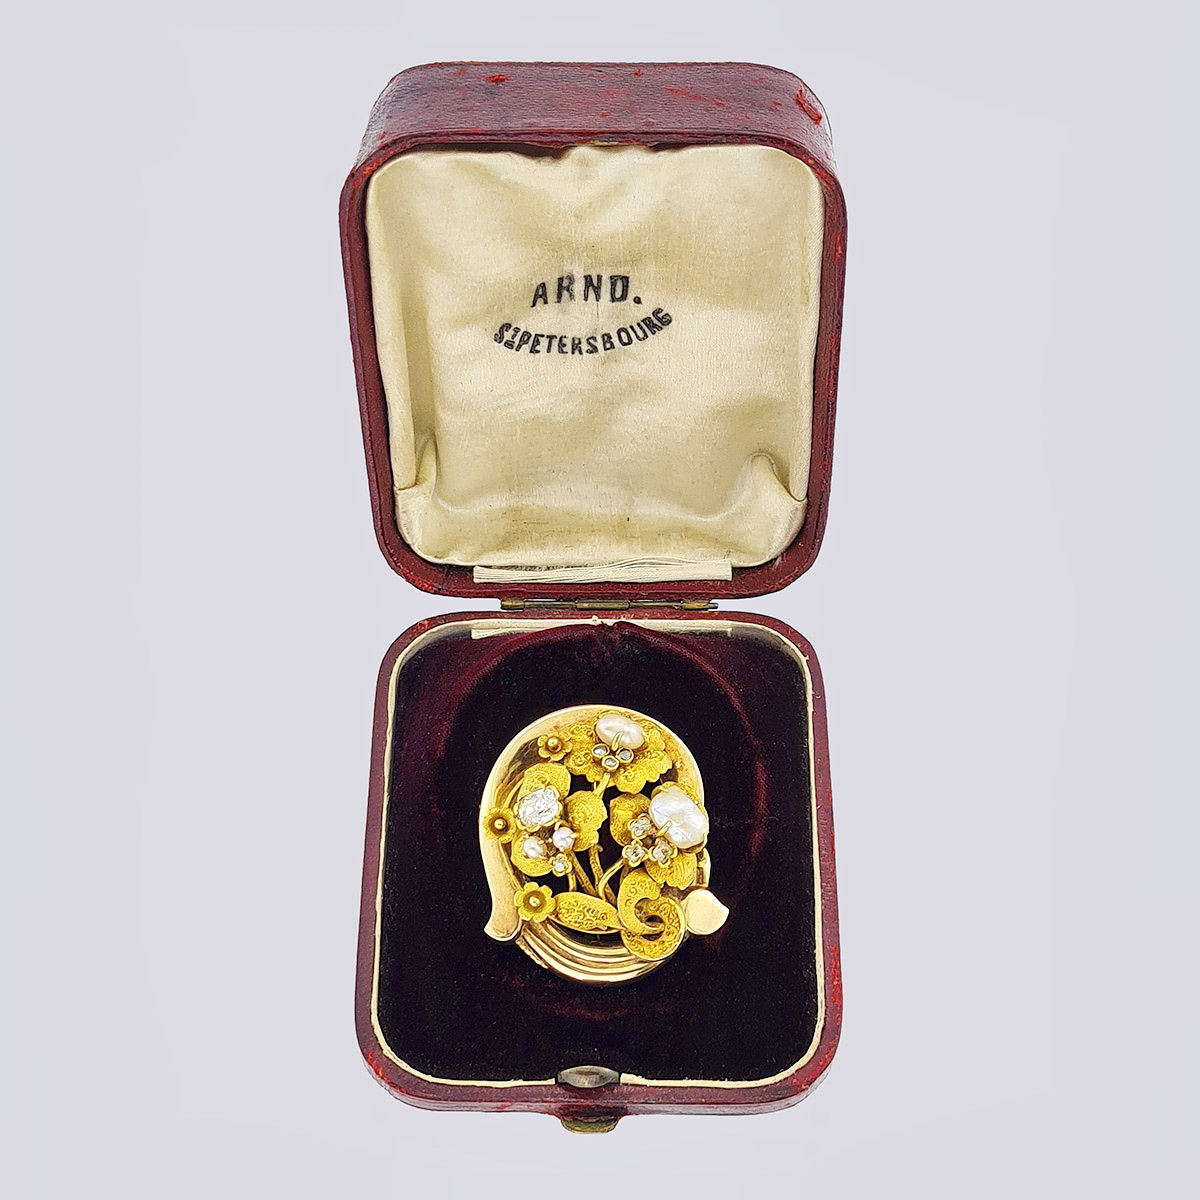 Брошь-подвеска из золота 56 пробы с бриллиантами, алмазами «роза» и жемчугом